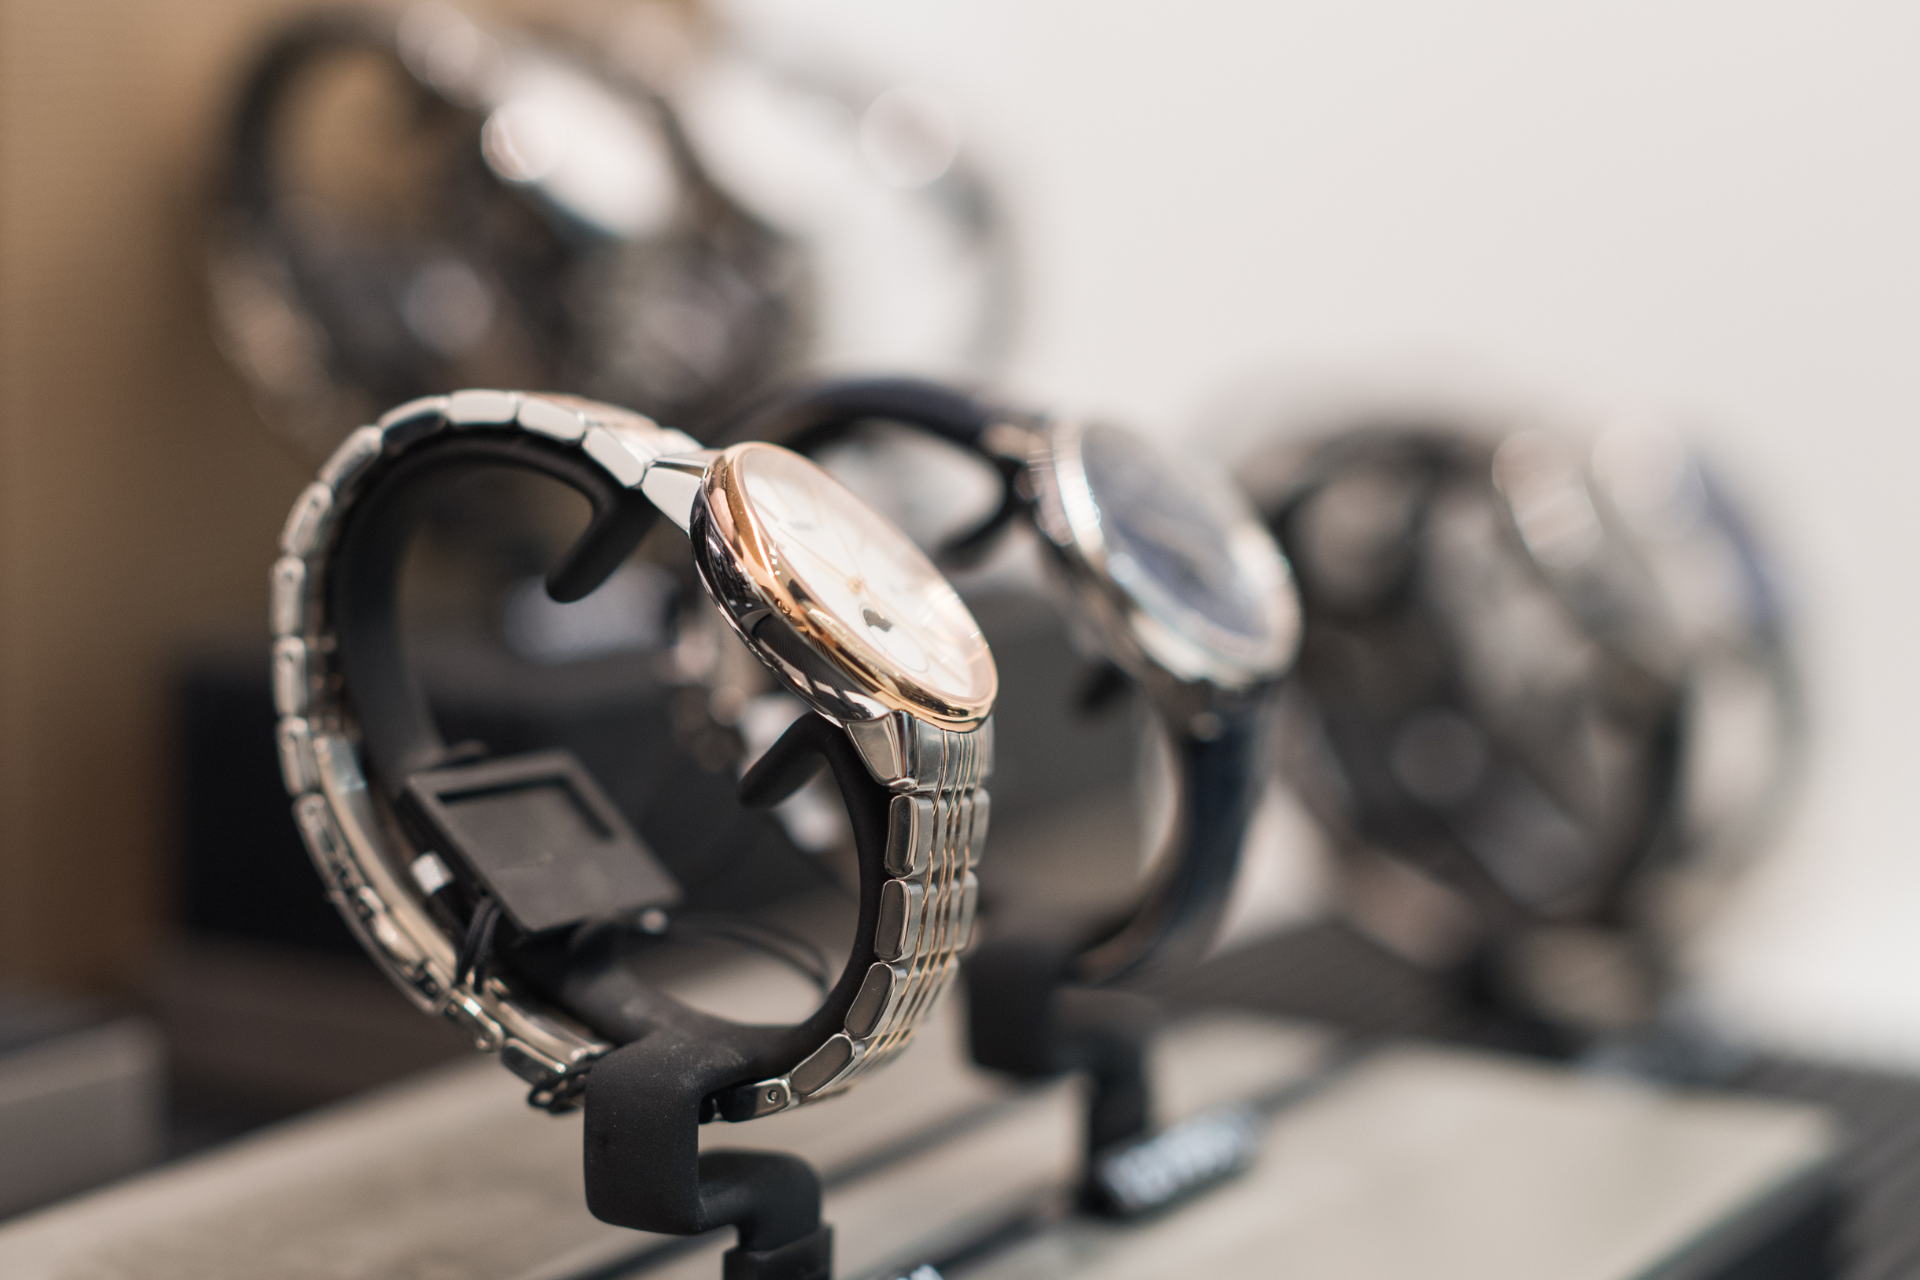 Porównanie ekskluzywnych zegarków z zegarkami masowymi: różnice i podobieństwa